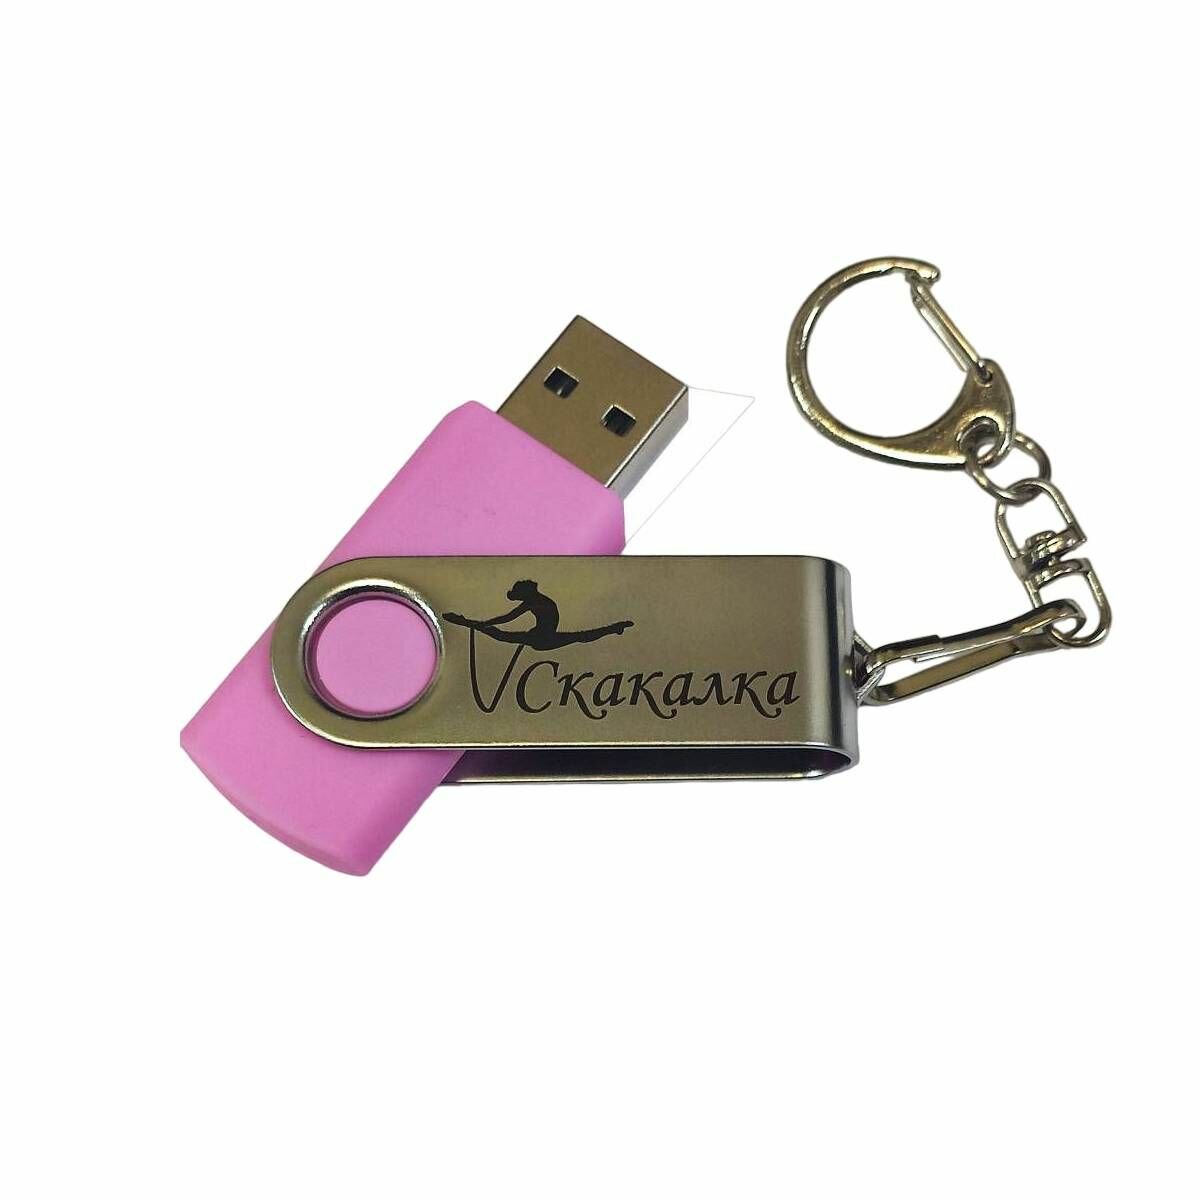 Подарочный USB-накопитель Гимнастика со скакалкой сувенирная флешка черная 4GB